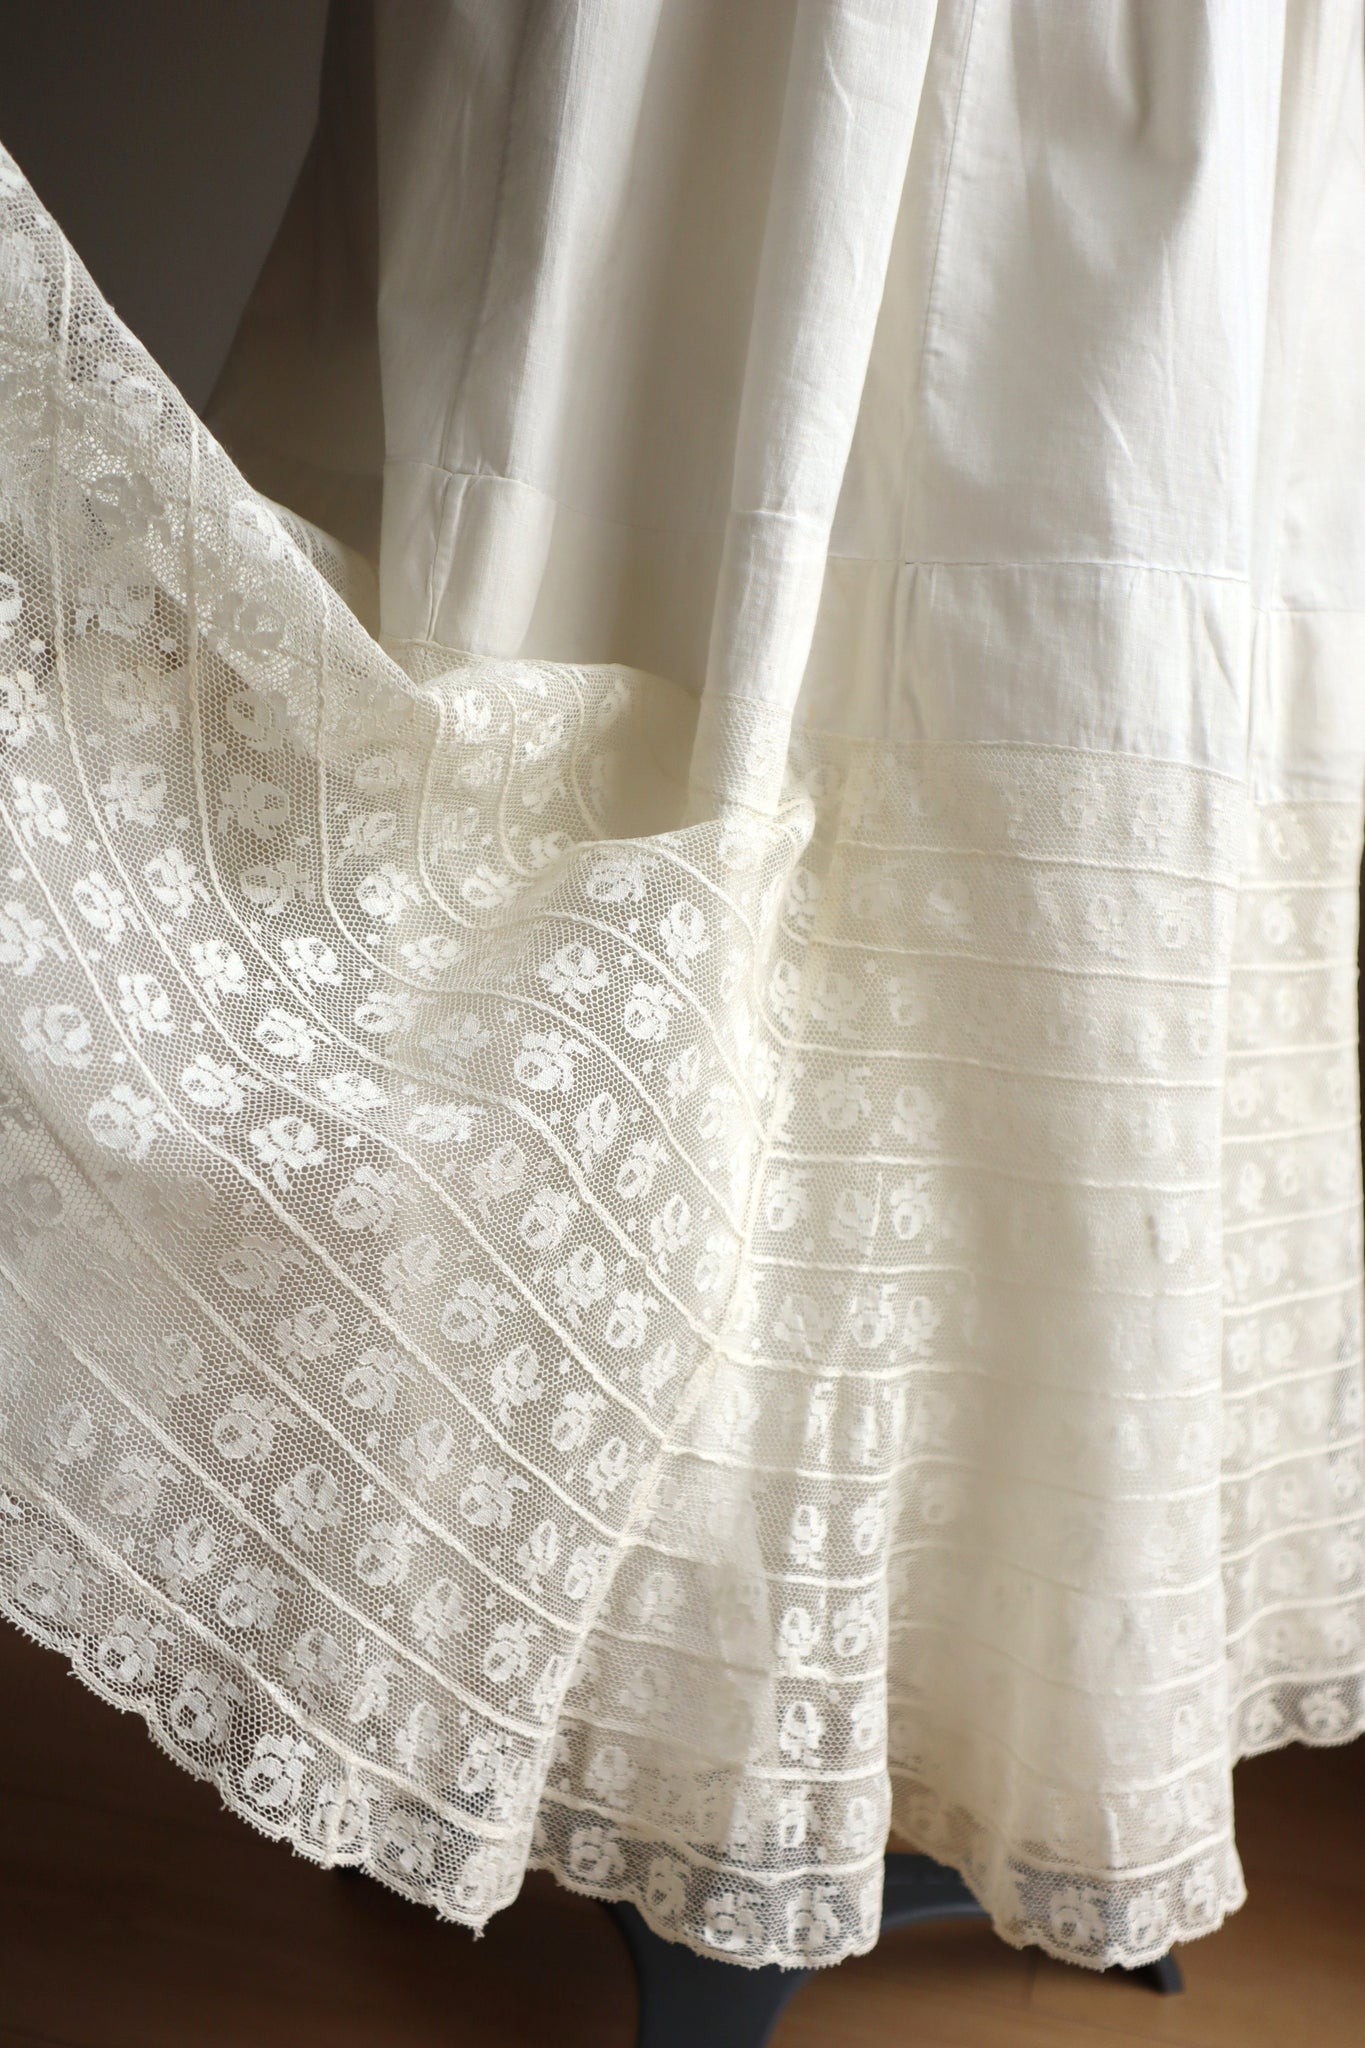 1900s Floral Lace Cotton Skirt